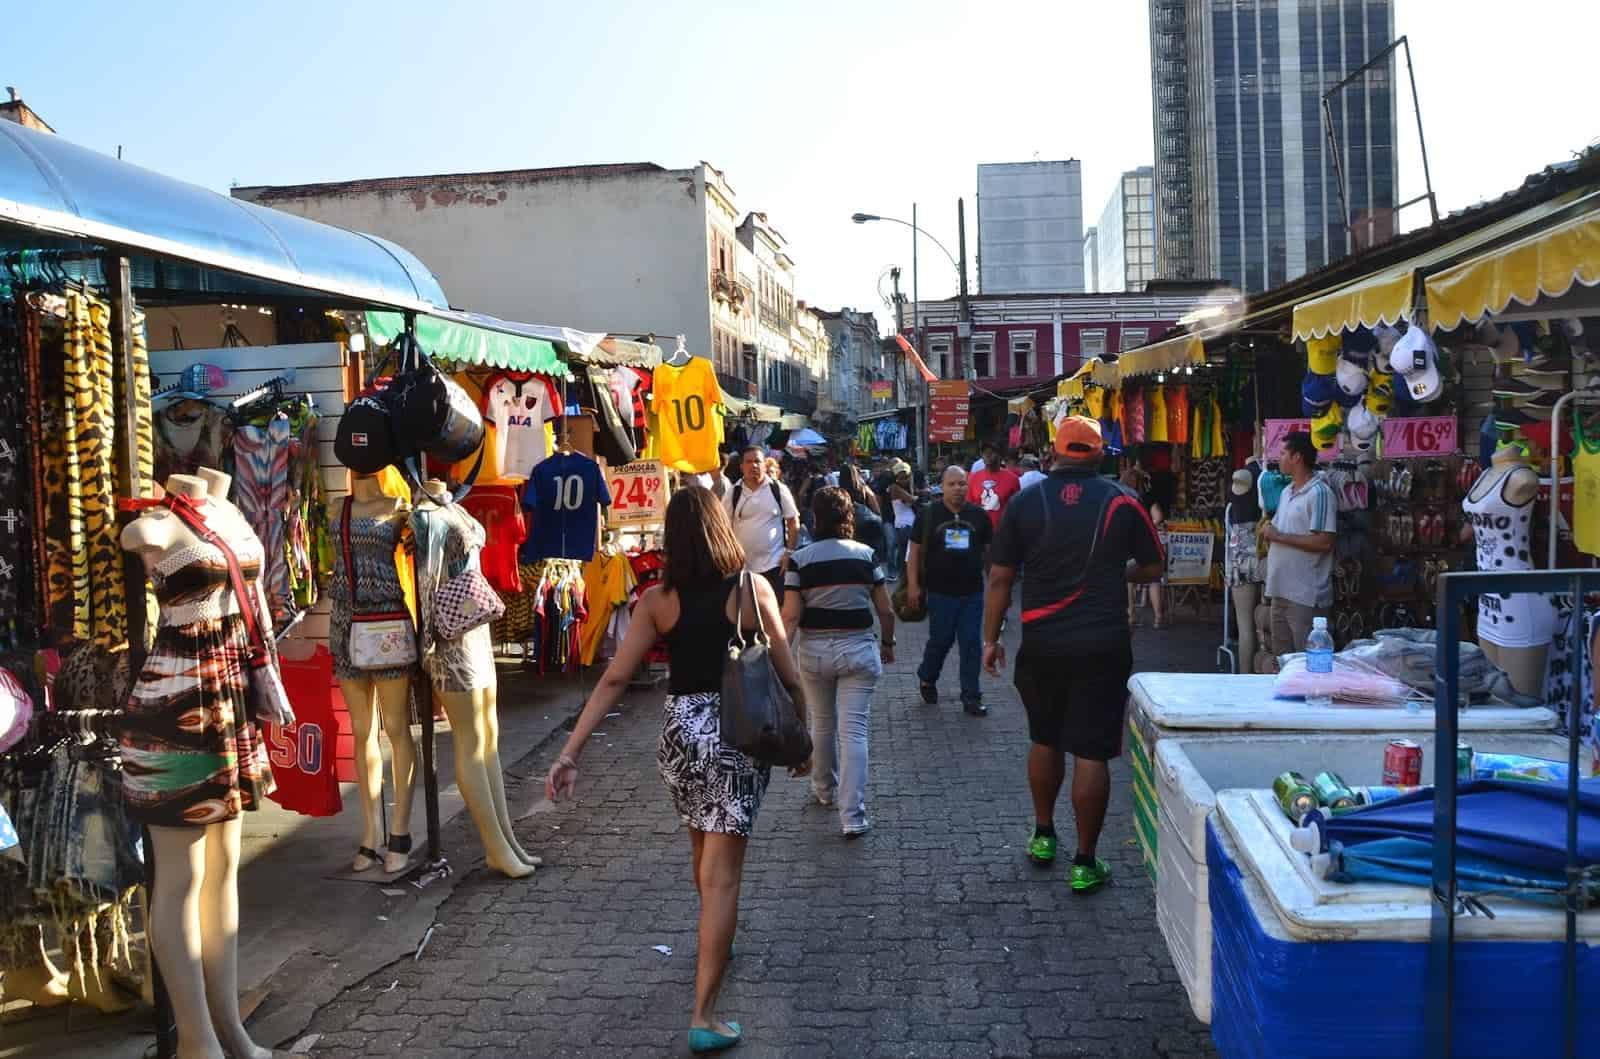 Mercado Popular in Rio de Janeiro, Brazil